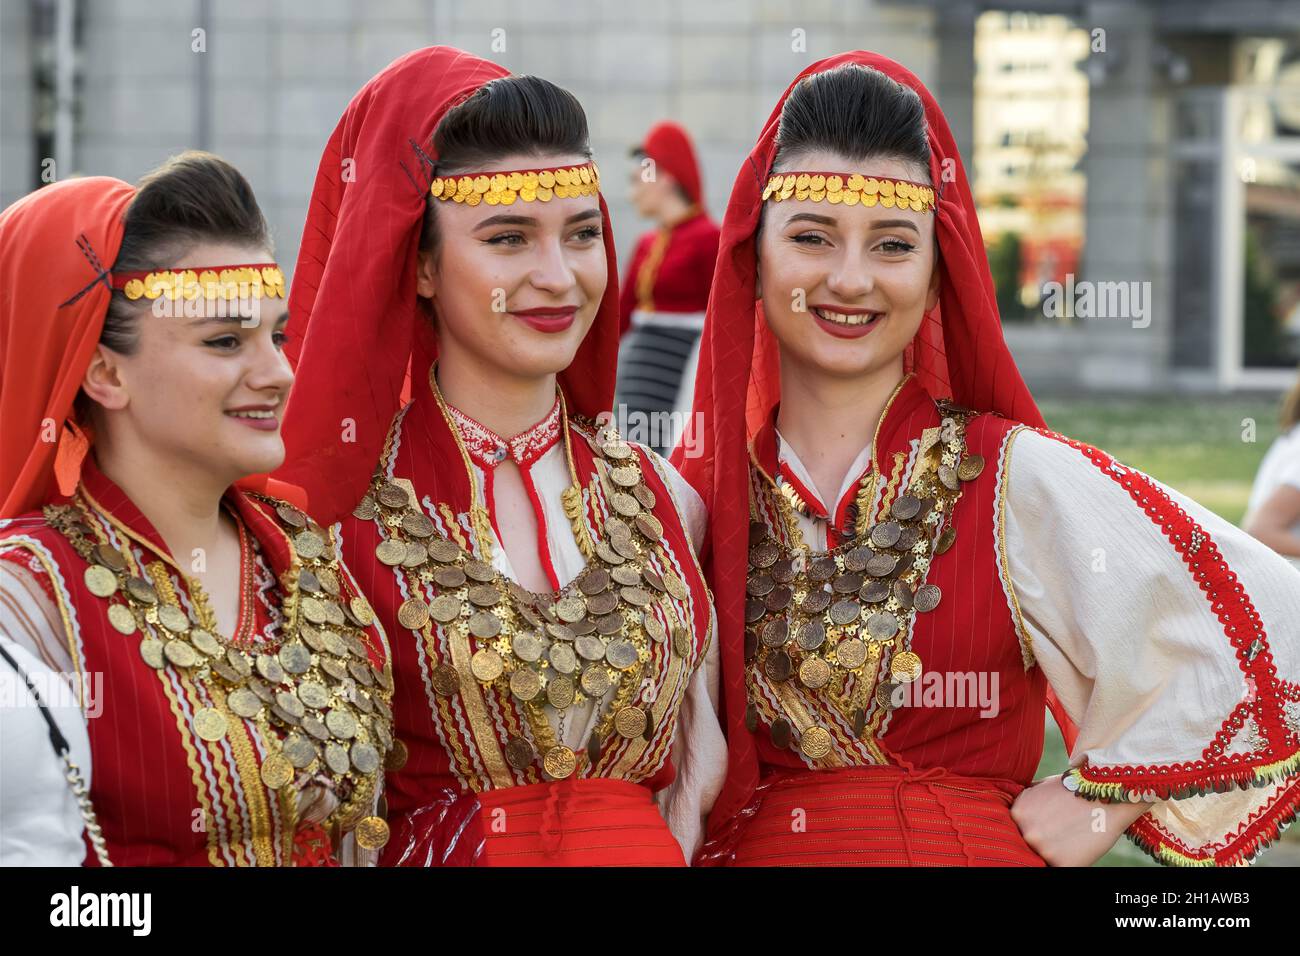 Wunderschöne Frauen in traditionellen albanischen Kostümen posieren für Fotos während des jährlichen Musik- und Tanzfestivals in Skopje Stockfoto